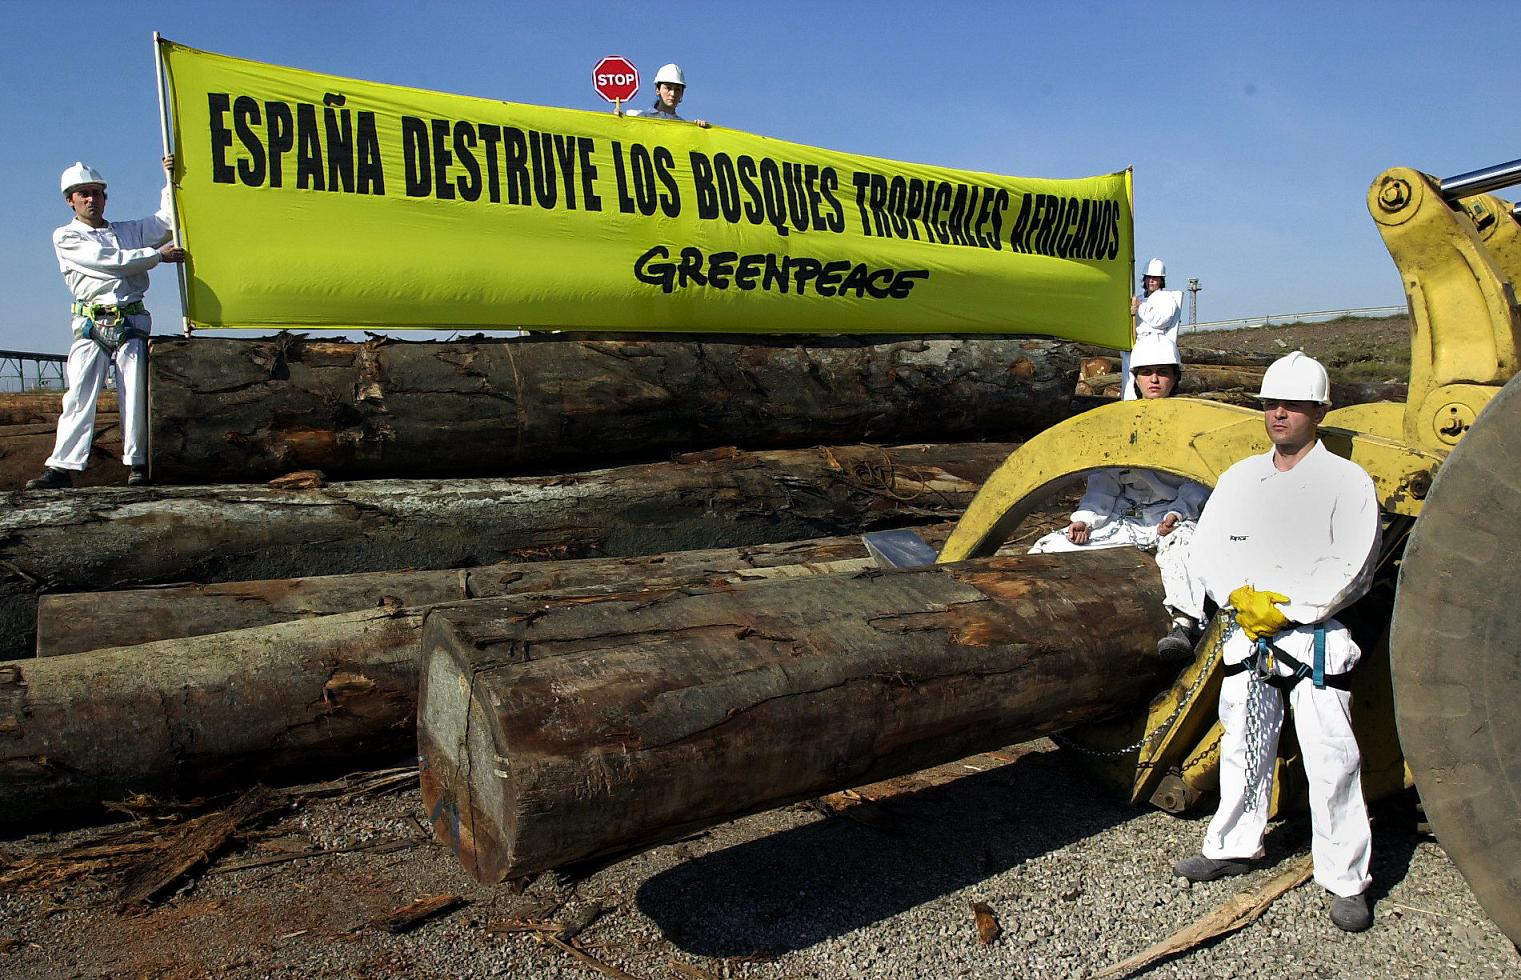 Imagen de archivo de activistas de Greenpeace protestando contra la deforestación de selvas tropicales. EFE/Alberto Estévez.